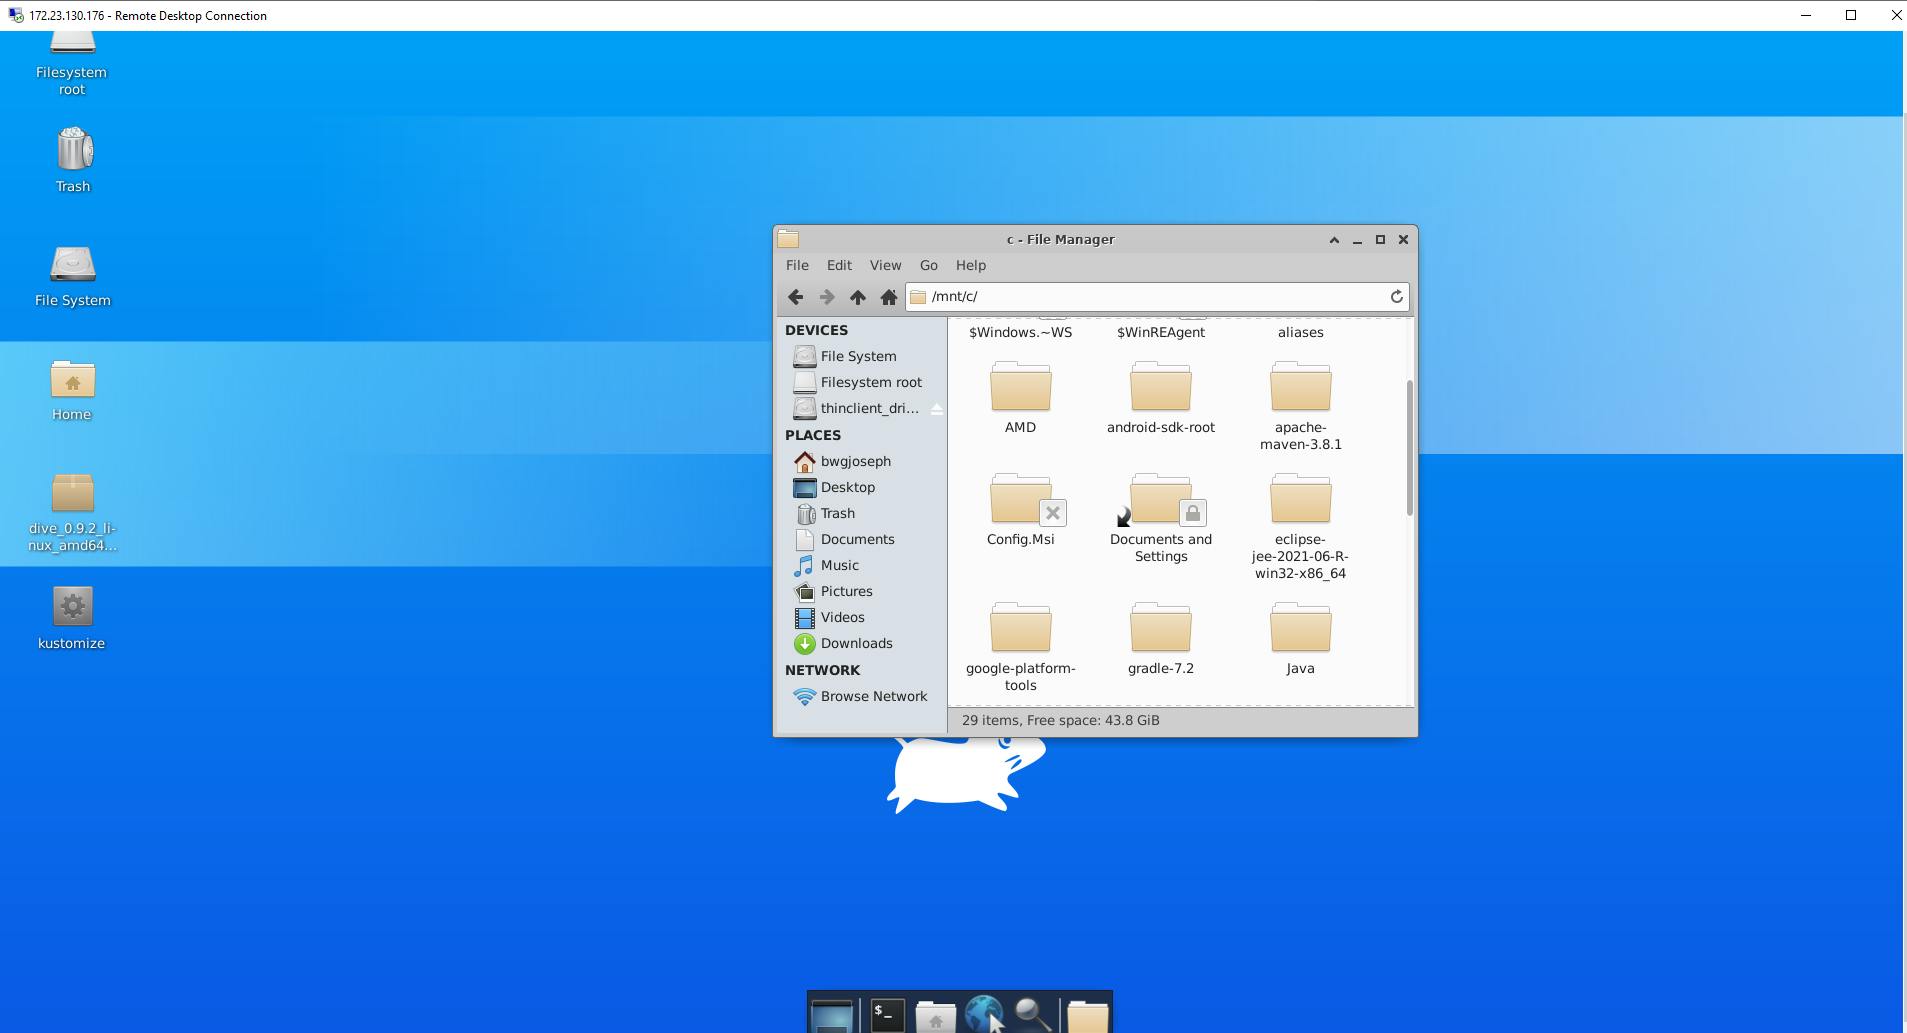 ubuntu-desktop.png